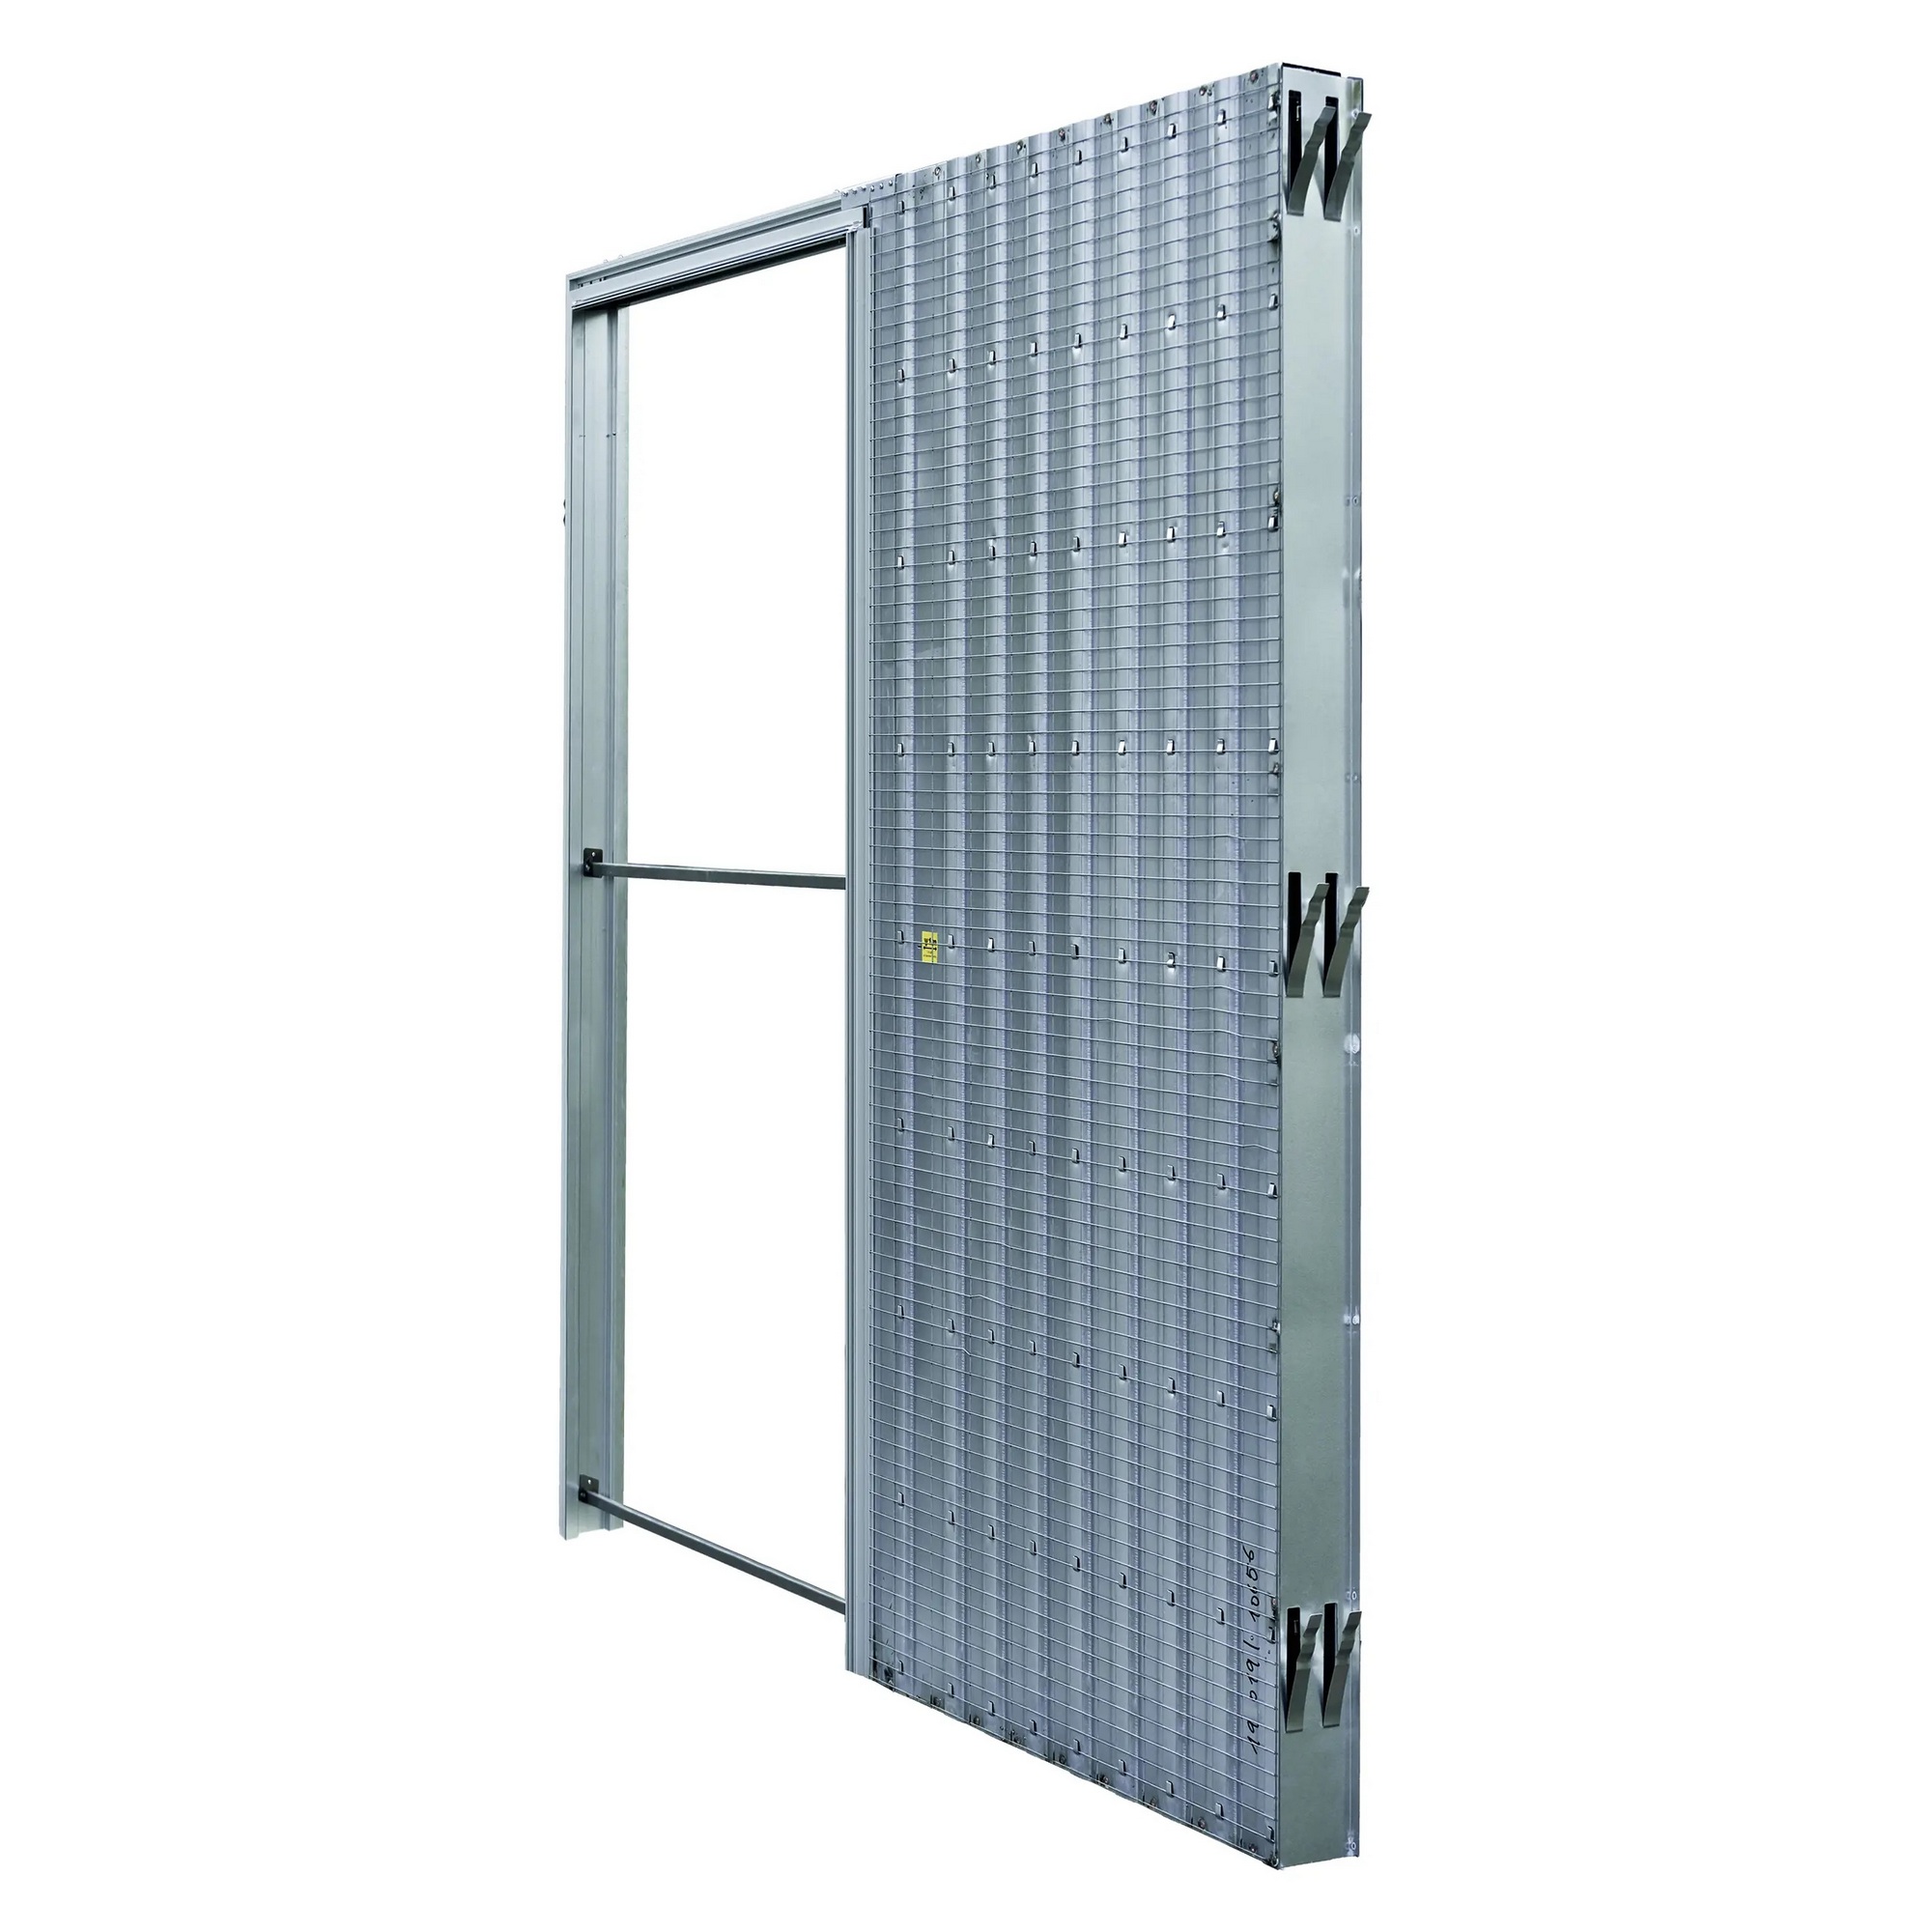 Pouzdro pro posuvné dveře JAP AKTIVE standard 600 mm do zdiva JAP